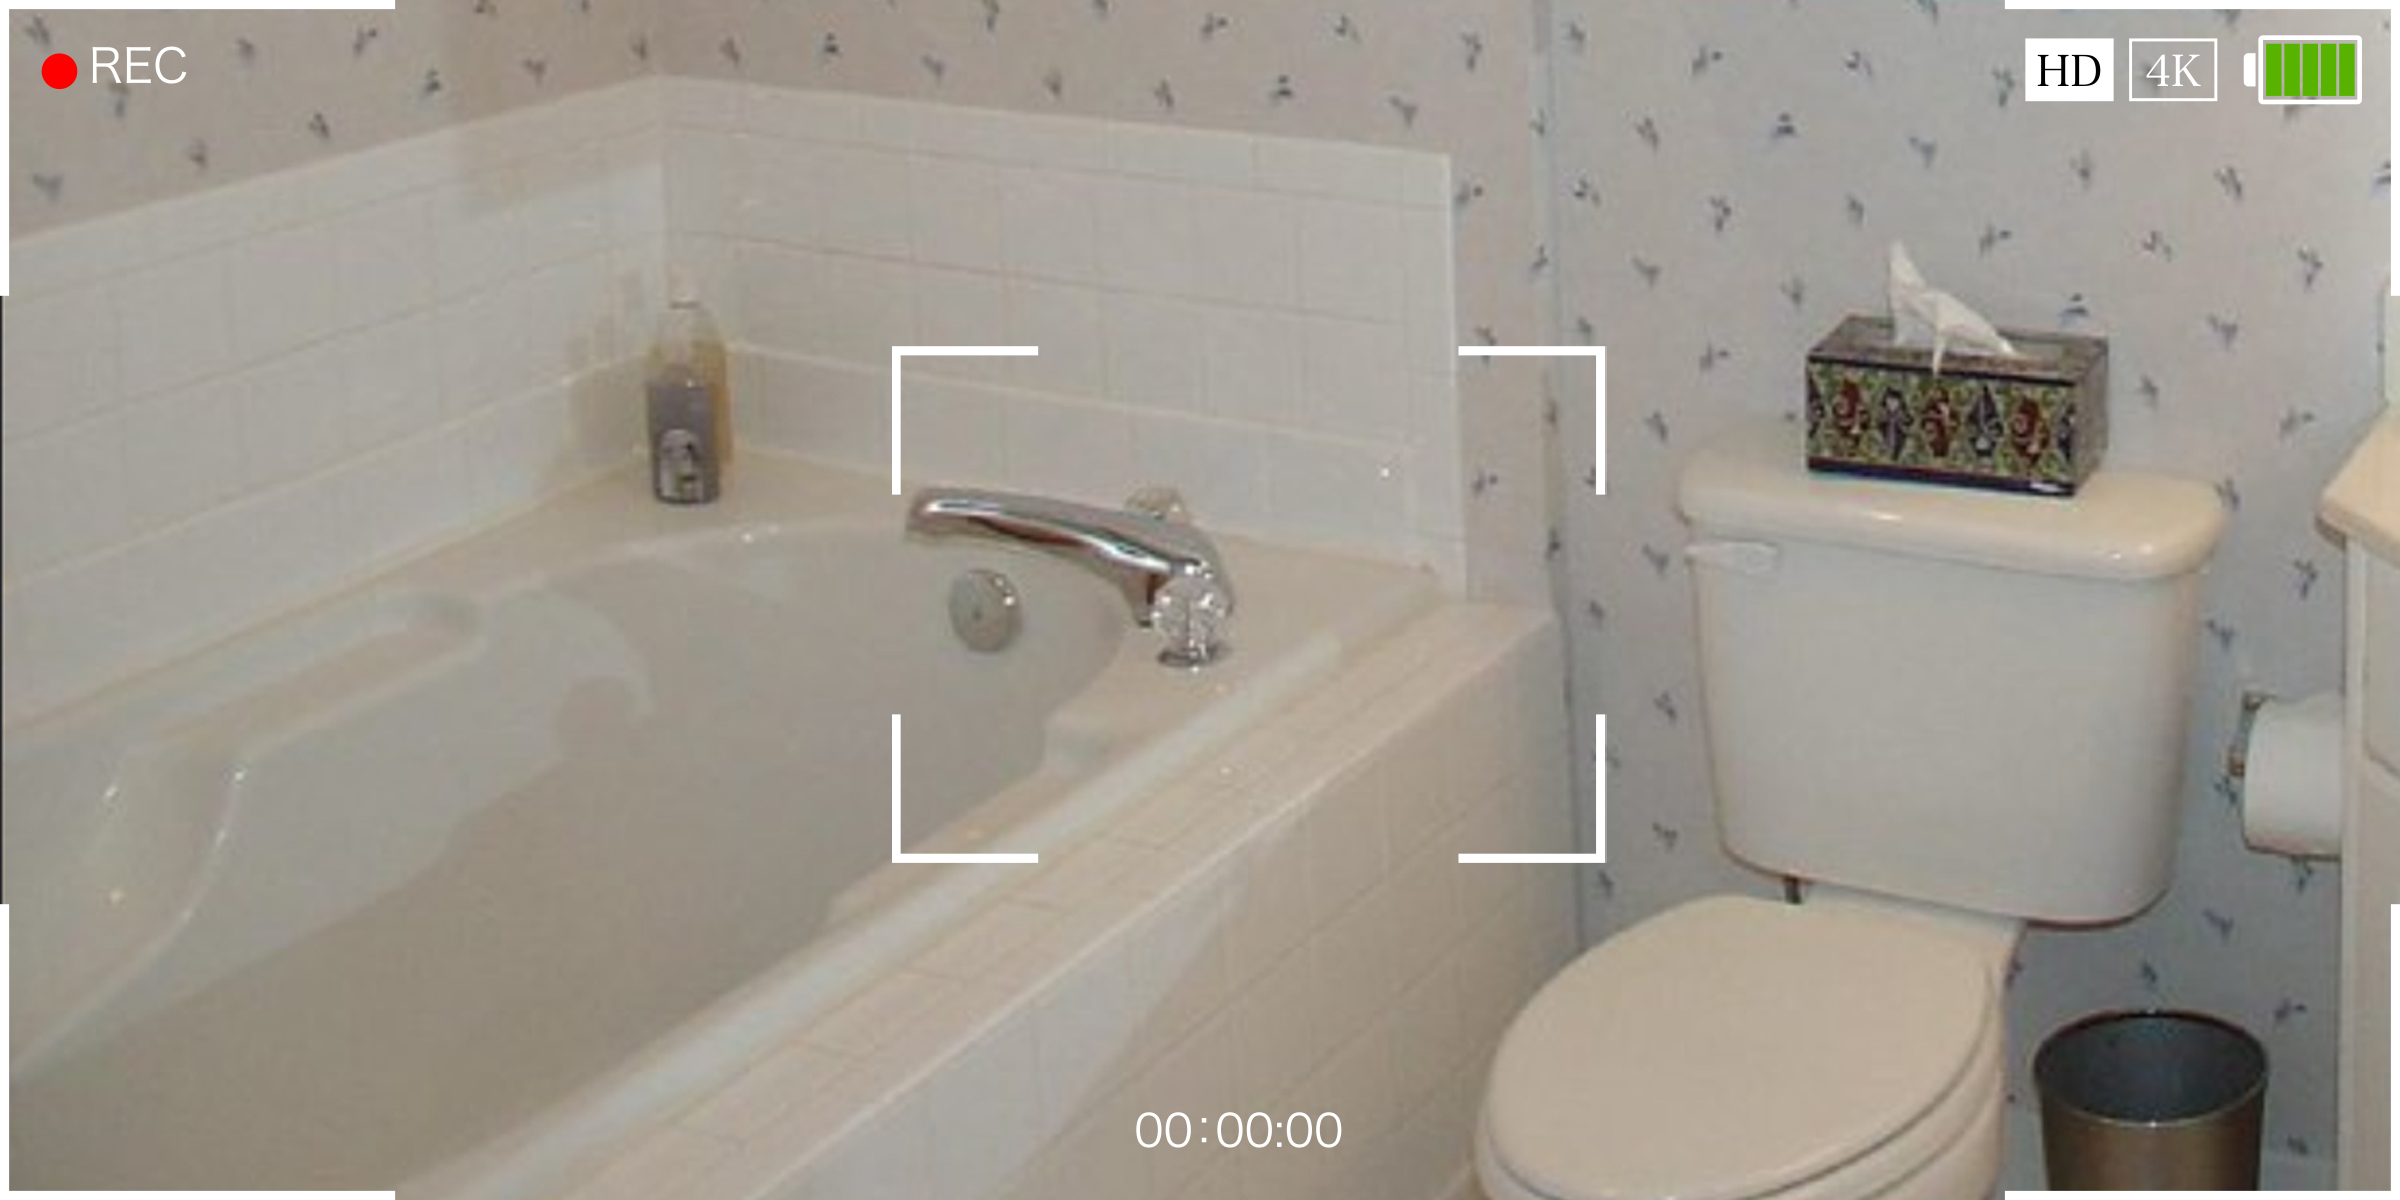 Una joven descubrió que estaban grabando su cuarto de baño. | Foto: Flickr.com/Ryan Park (CC BY 2.0)